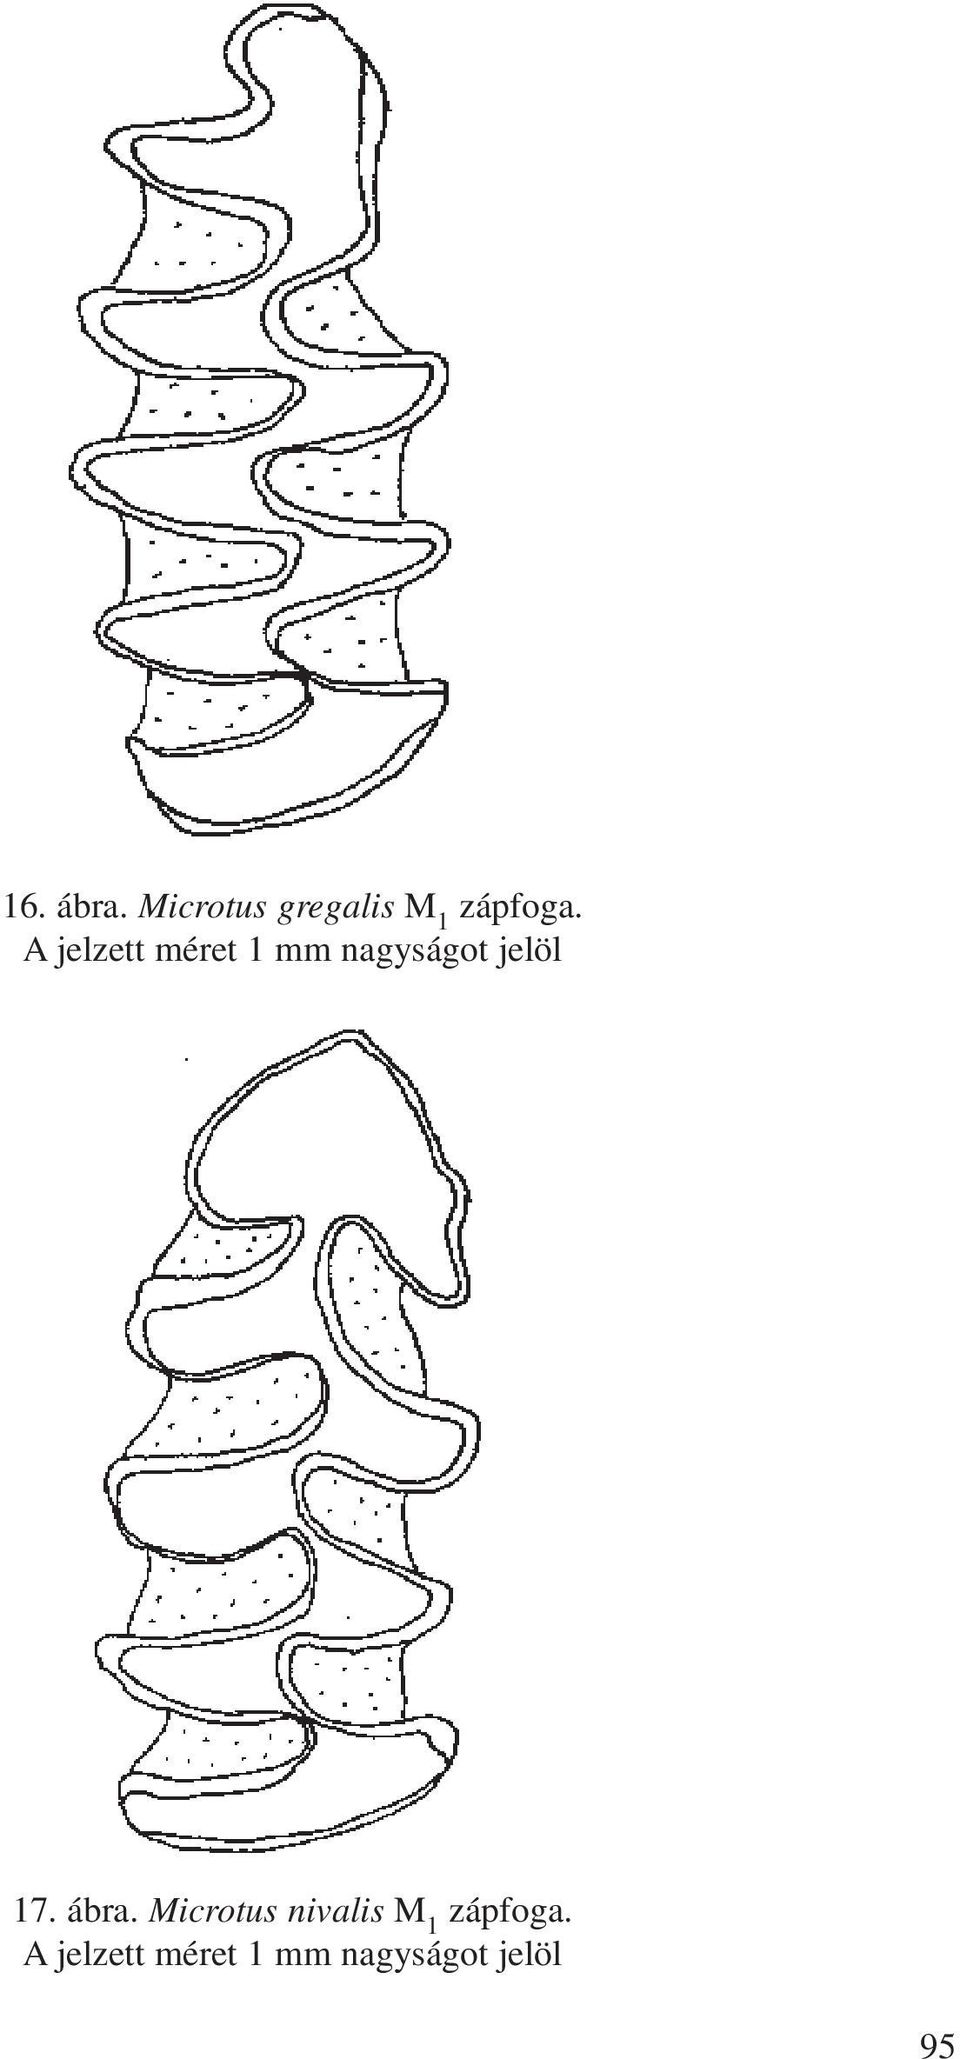 ábra. Microtus nivalis M 1 zápfoga.